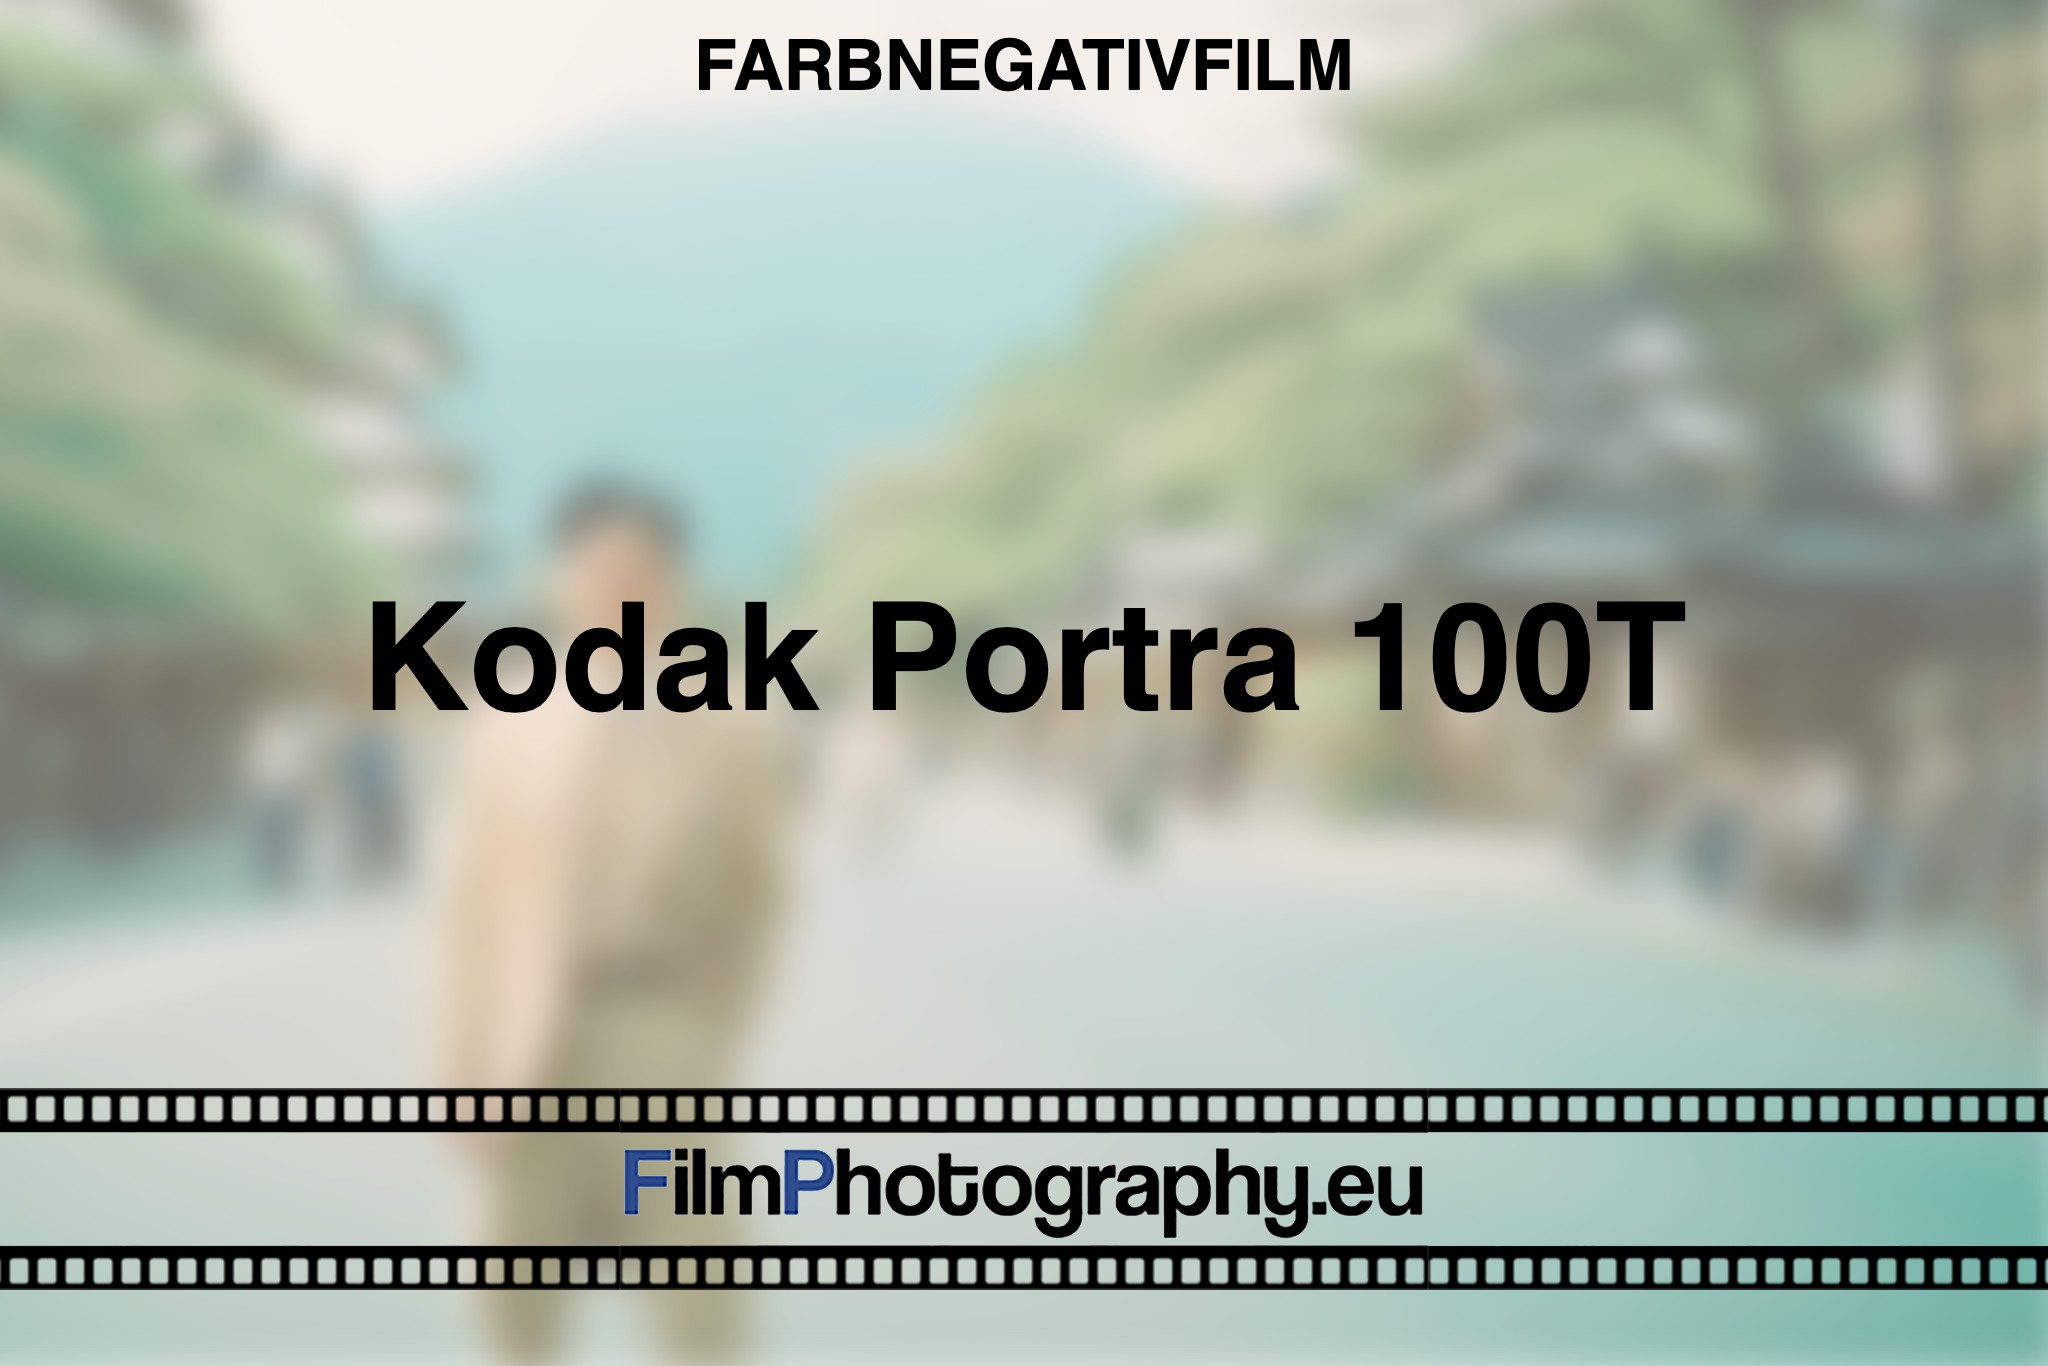 kodak-portra-100t-farbnegativfilm-bnv